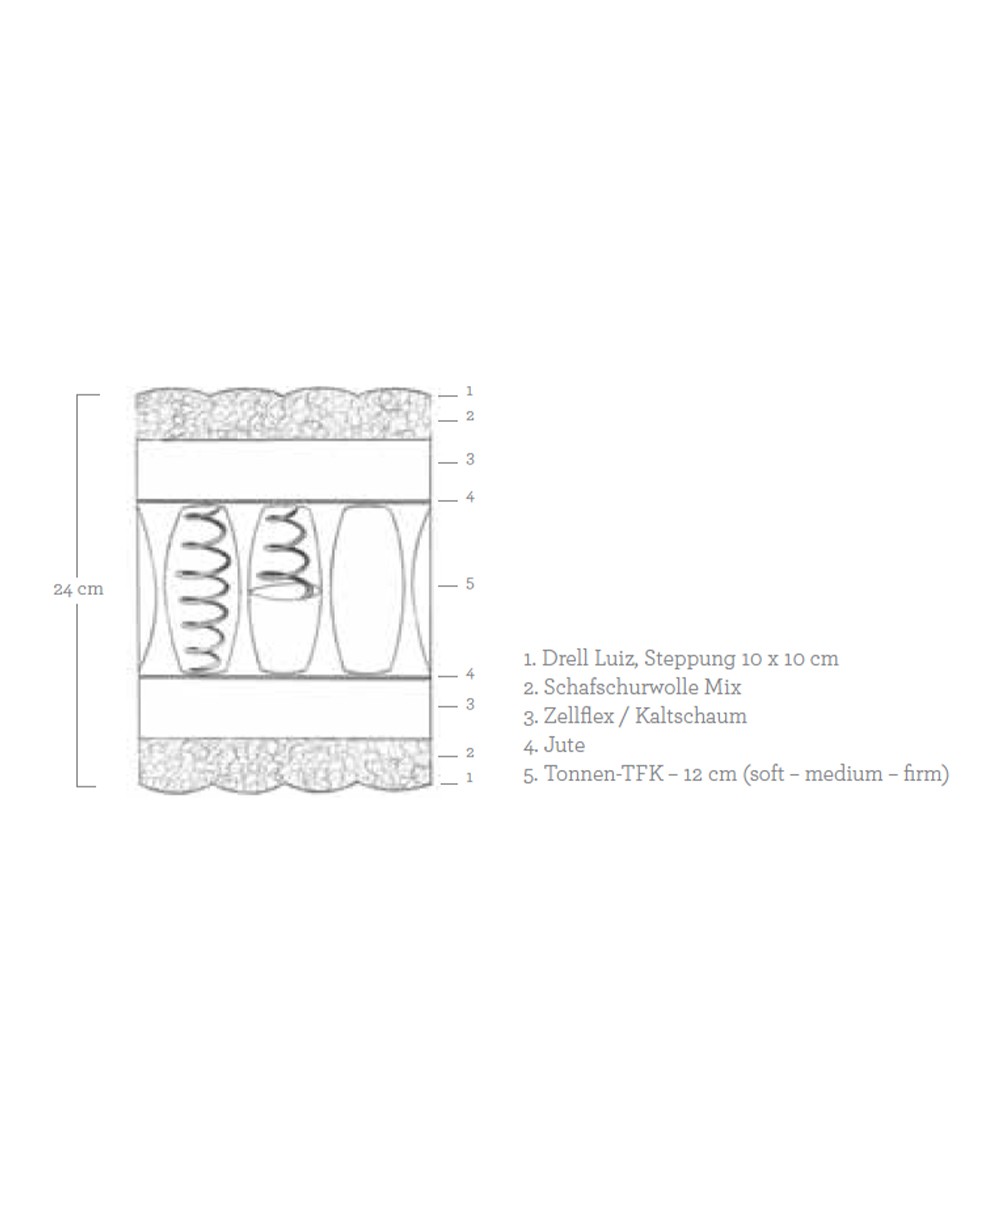 Grafik, die den Aufbau der Matratze Delight von Luiz zeigt